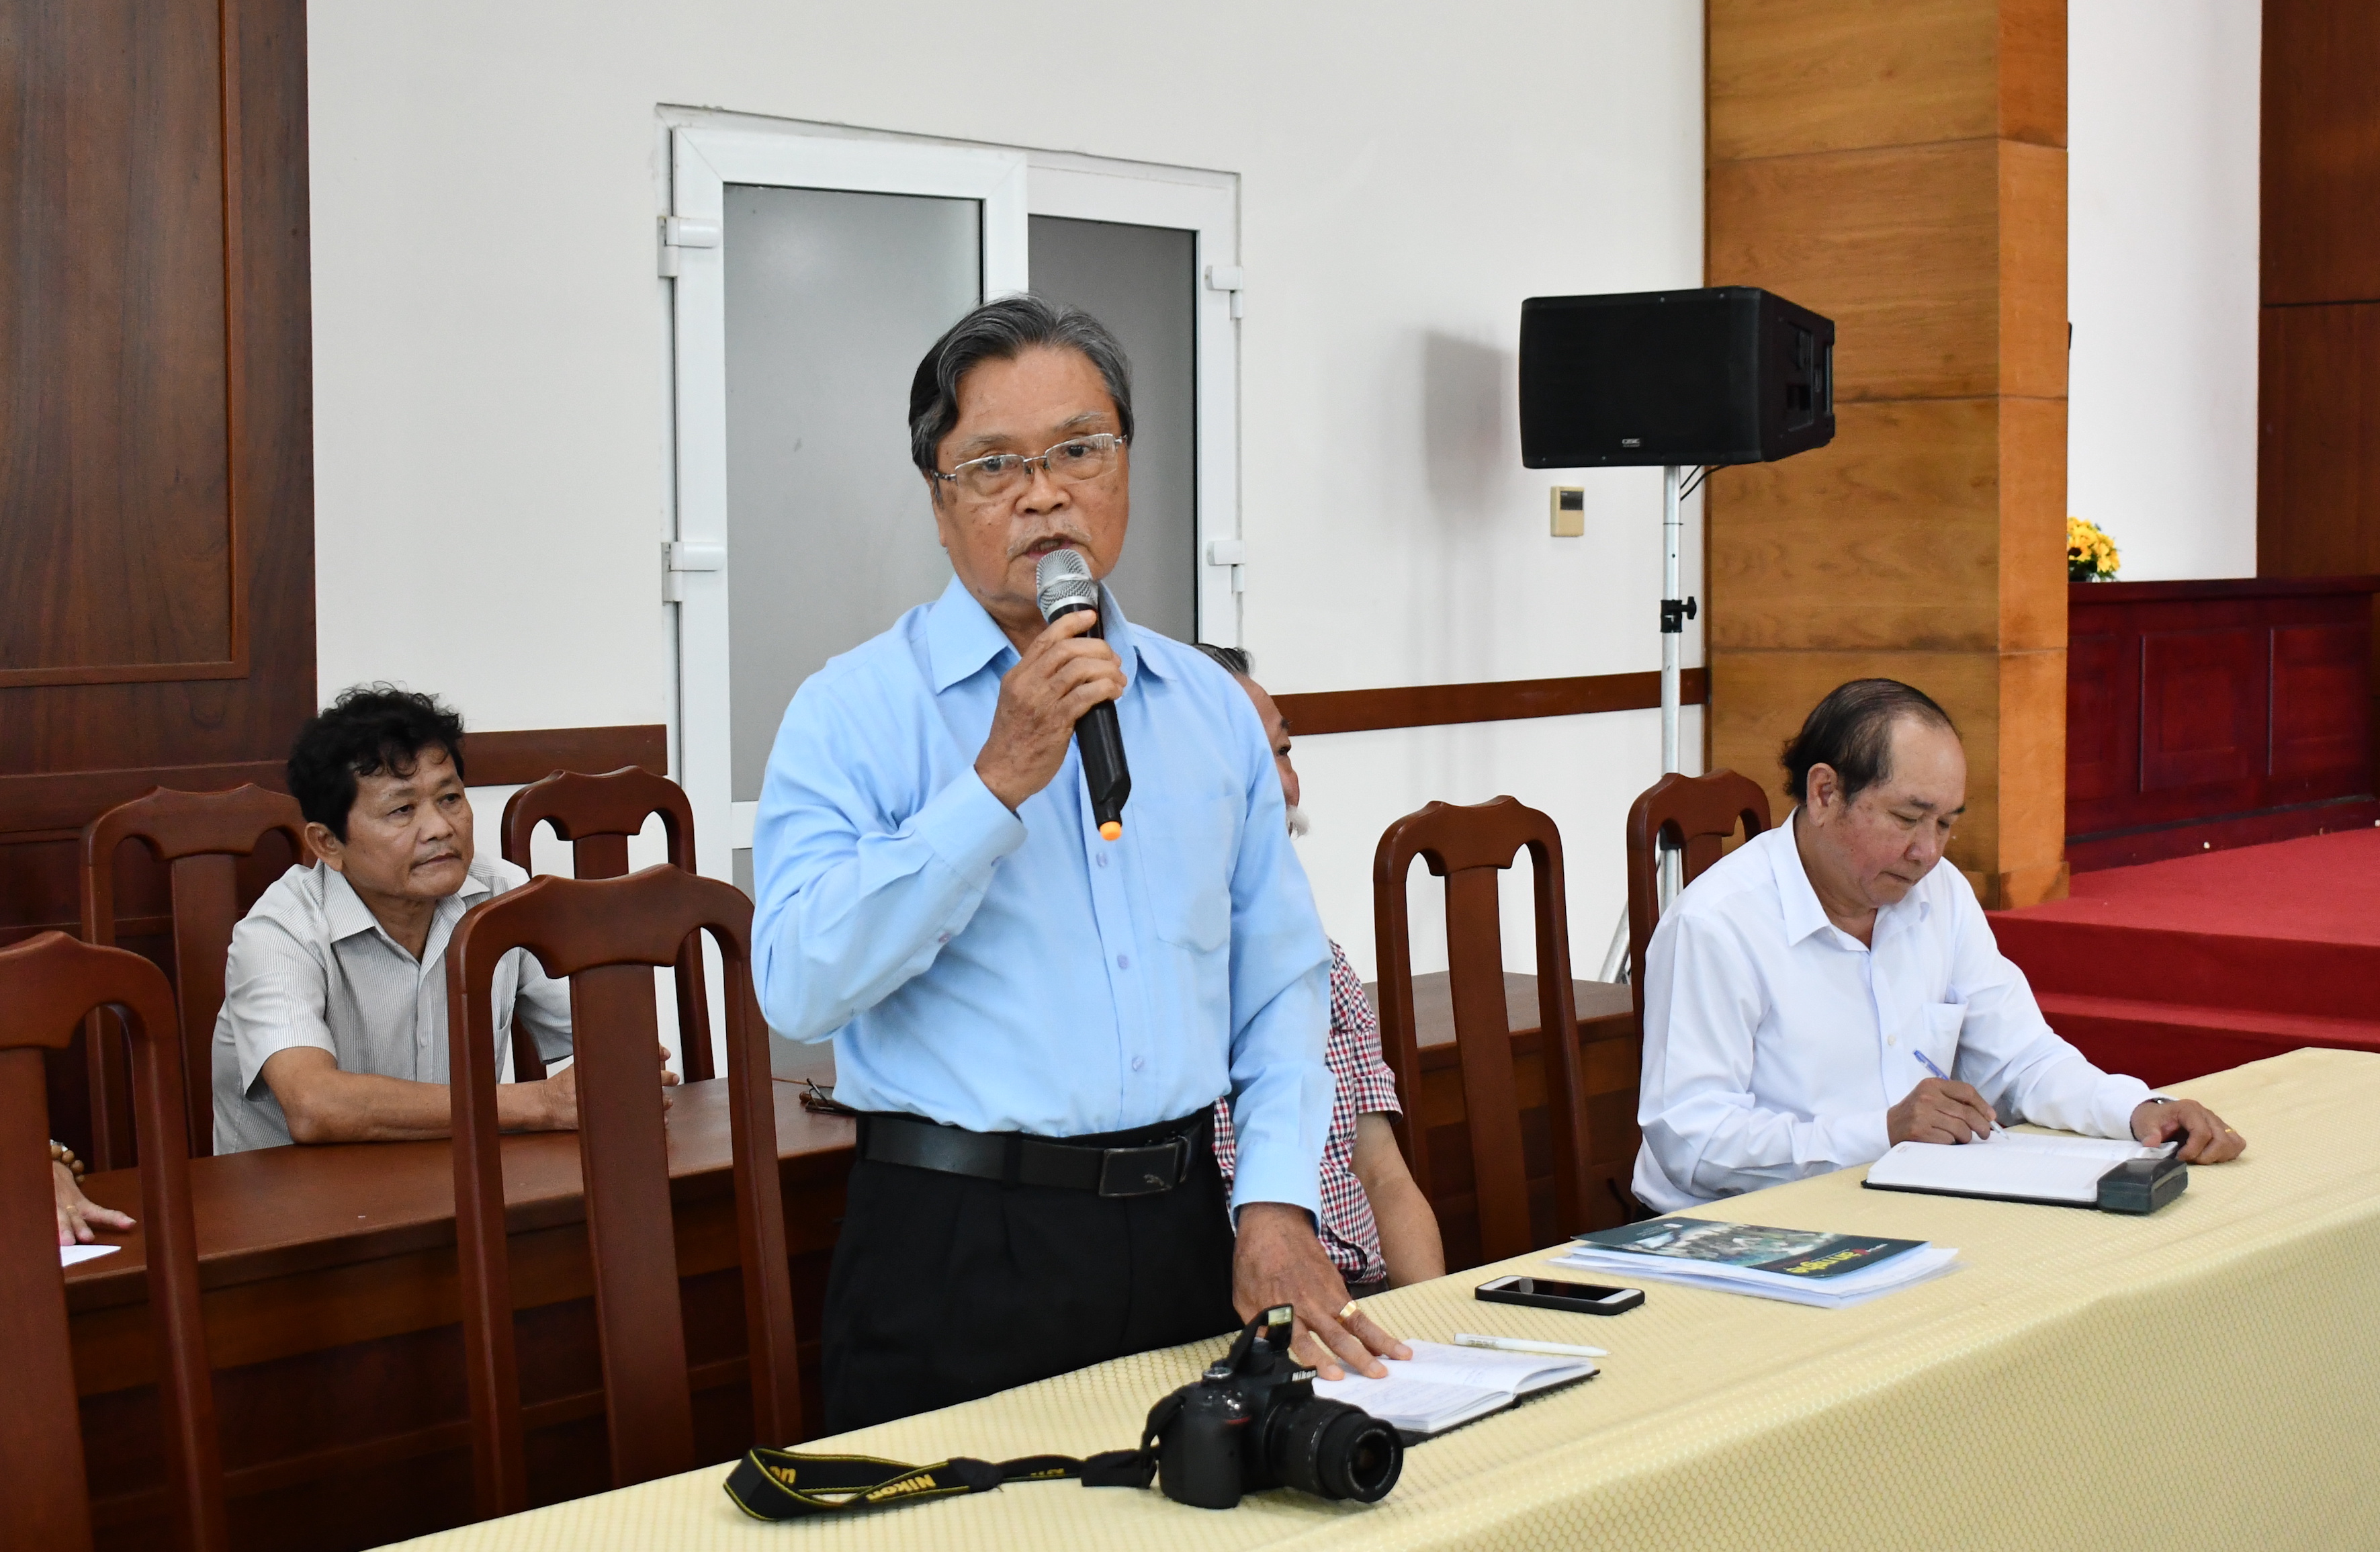 Nhạc sĩ Võ Lê phát biểu tại buổi họp mặt.